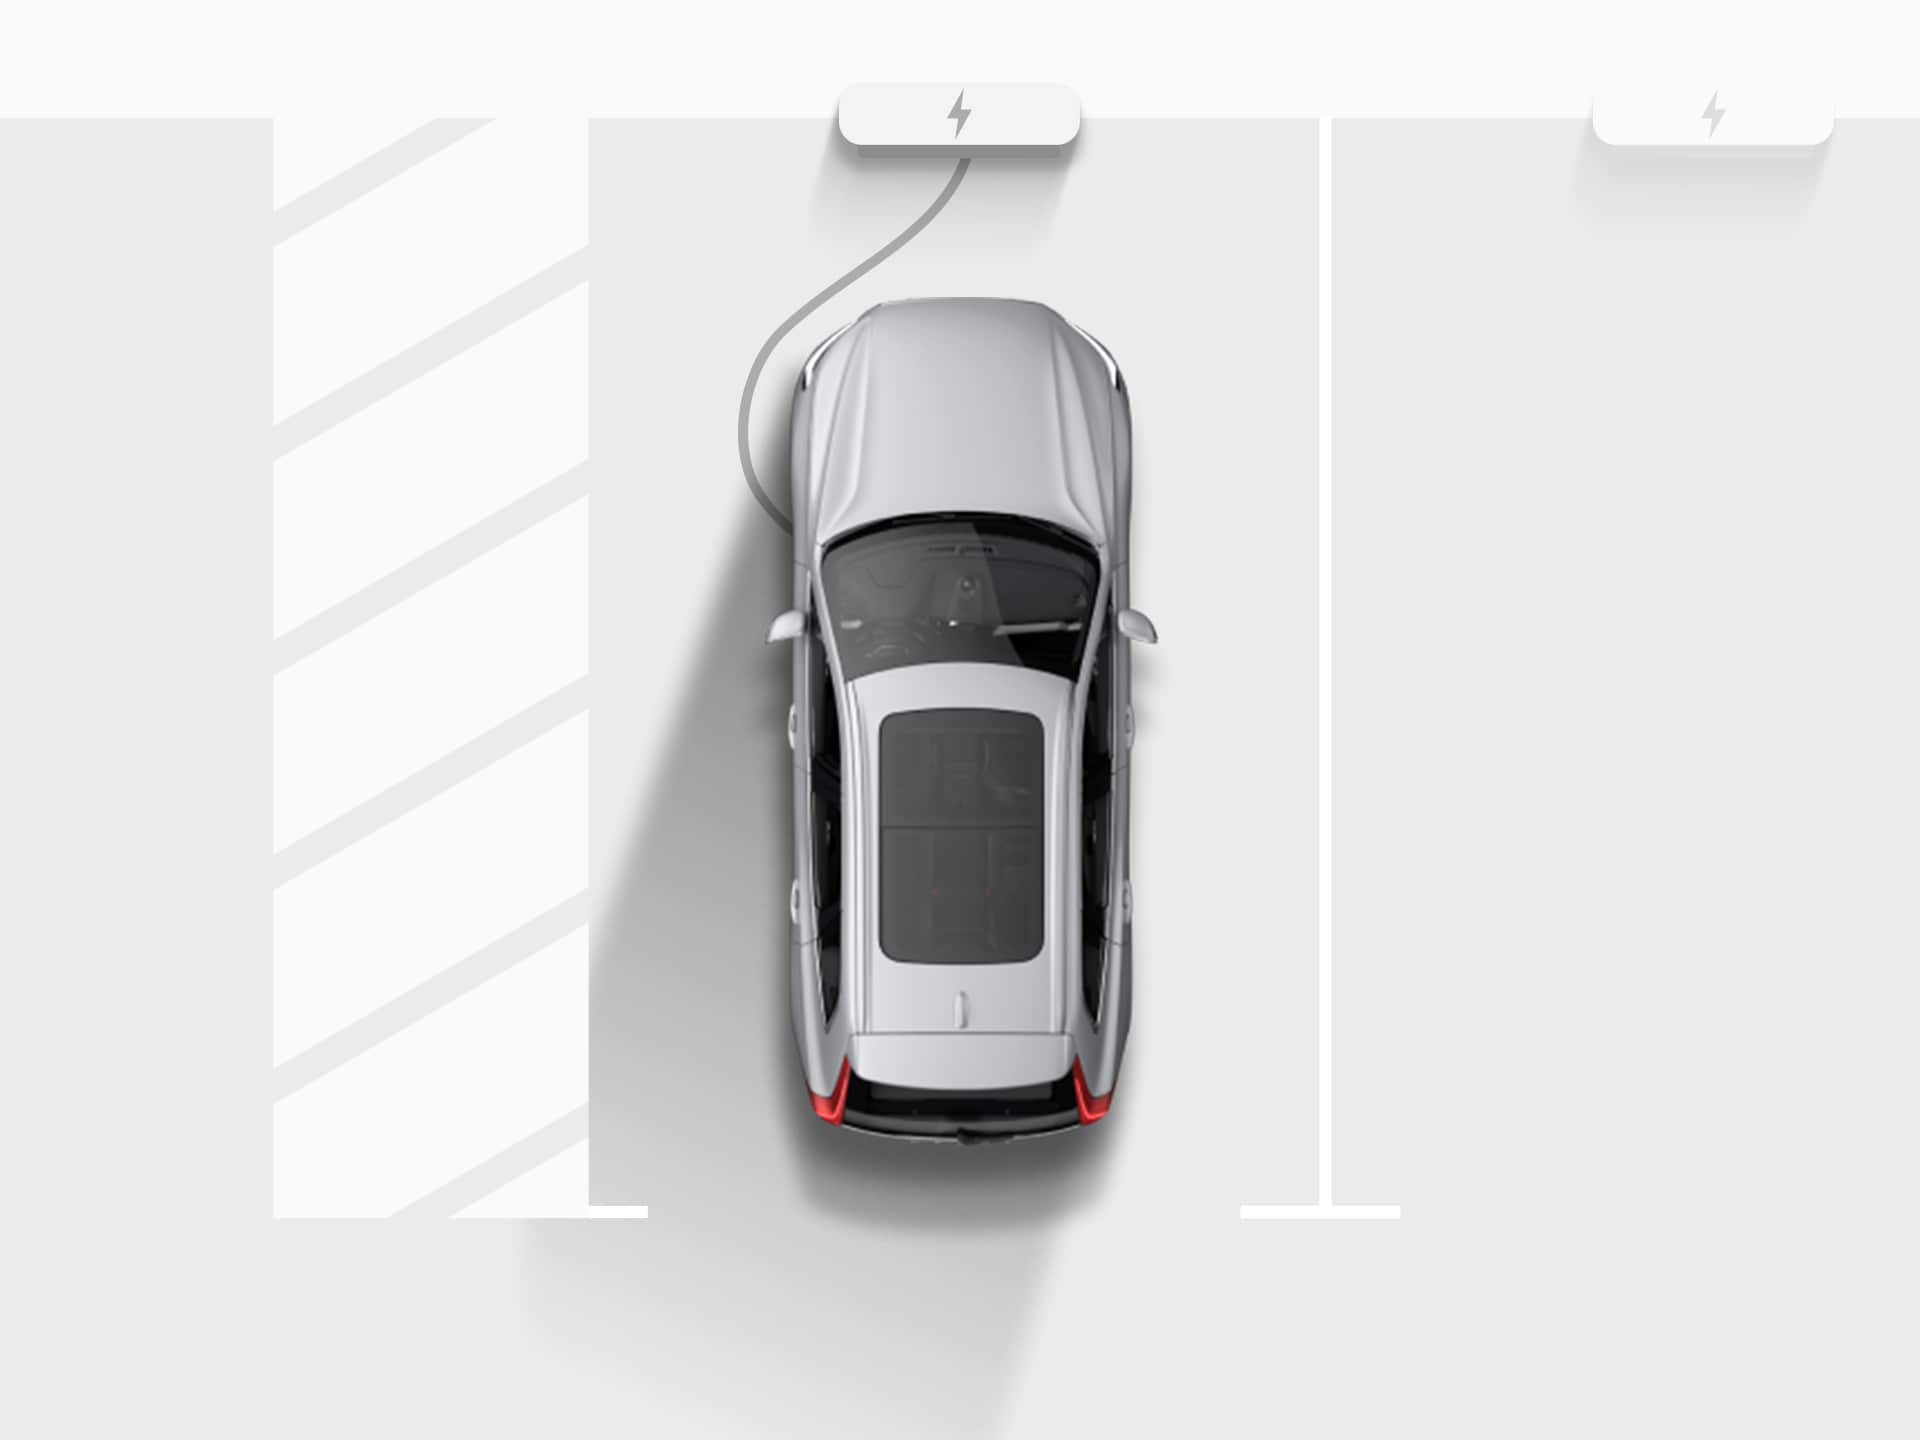 Digitāla attēla skats no augšas uz sudraba krāsas Volvo XC40 Recharge pilnība elektrisko apvidus automašīnu, kas pievienota uzlādes stacijai dzīvokļu mājas stāvvietas garāžā.